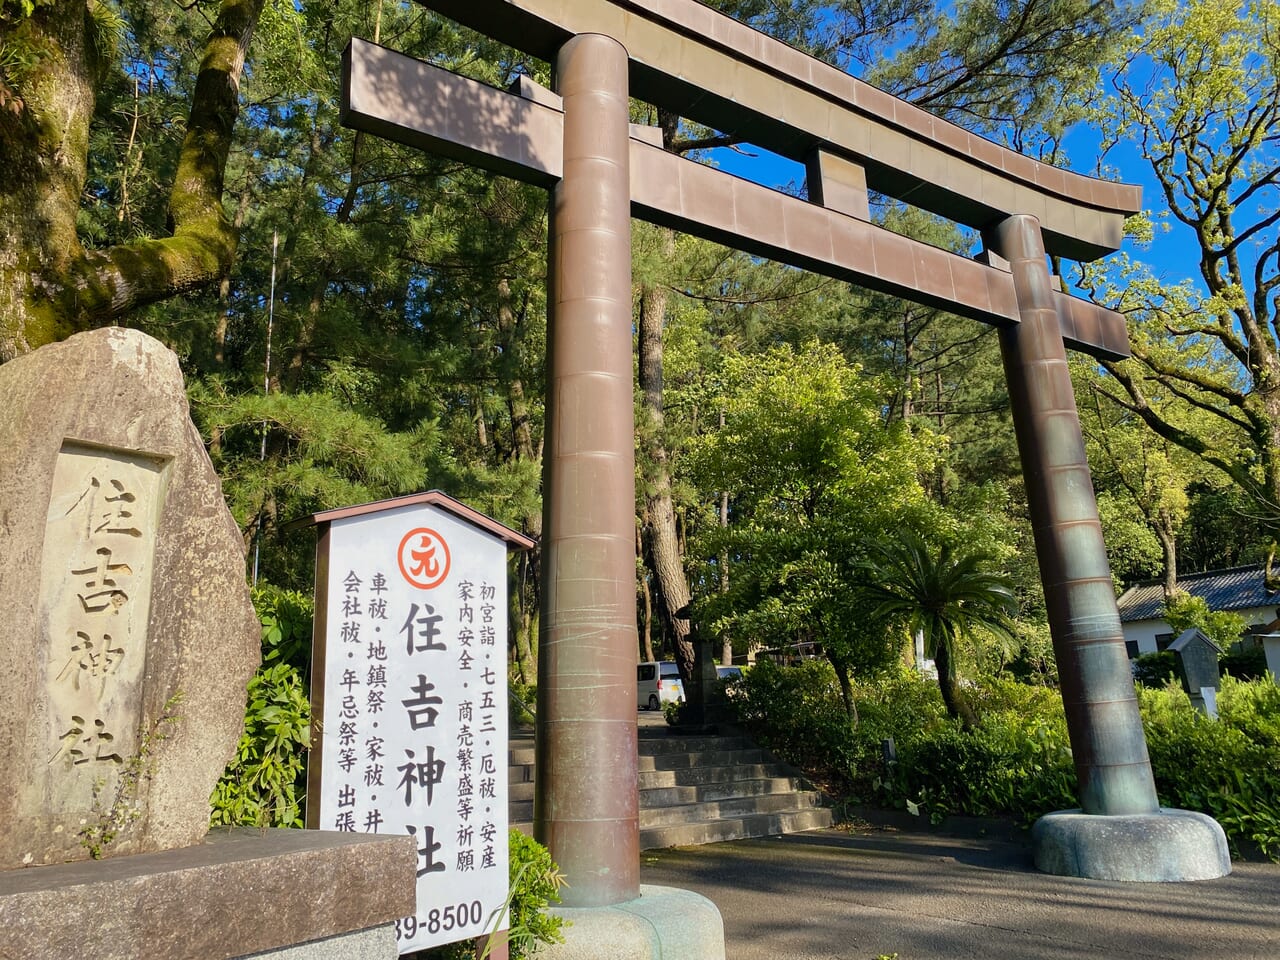 宮崎市イベント 住吉神社 神様のごちそうマルシェ 画像3